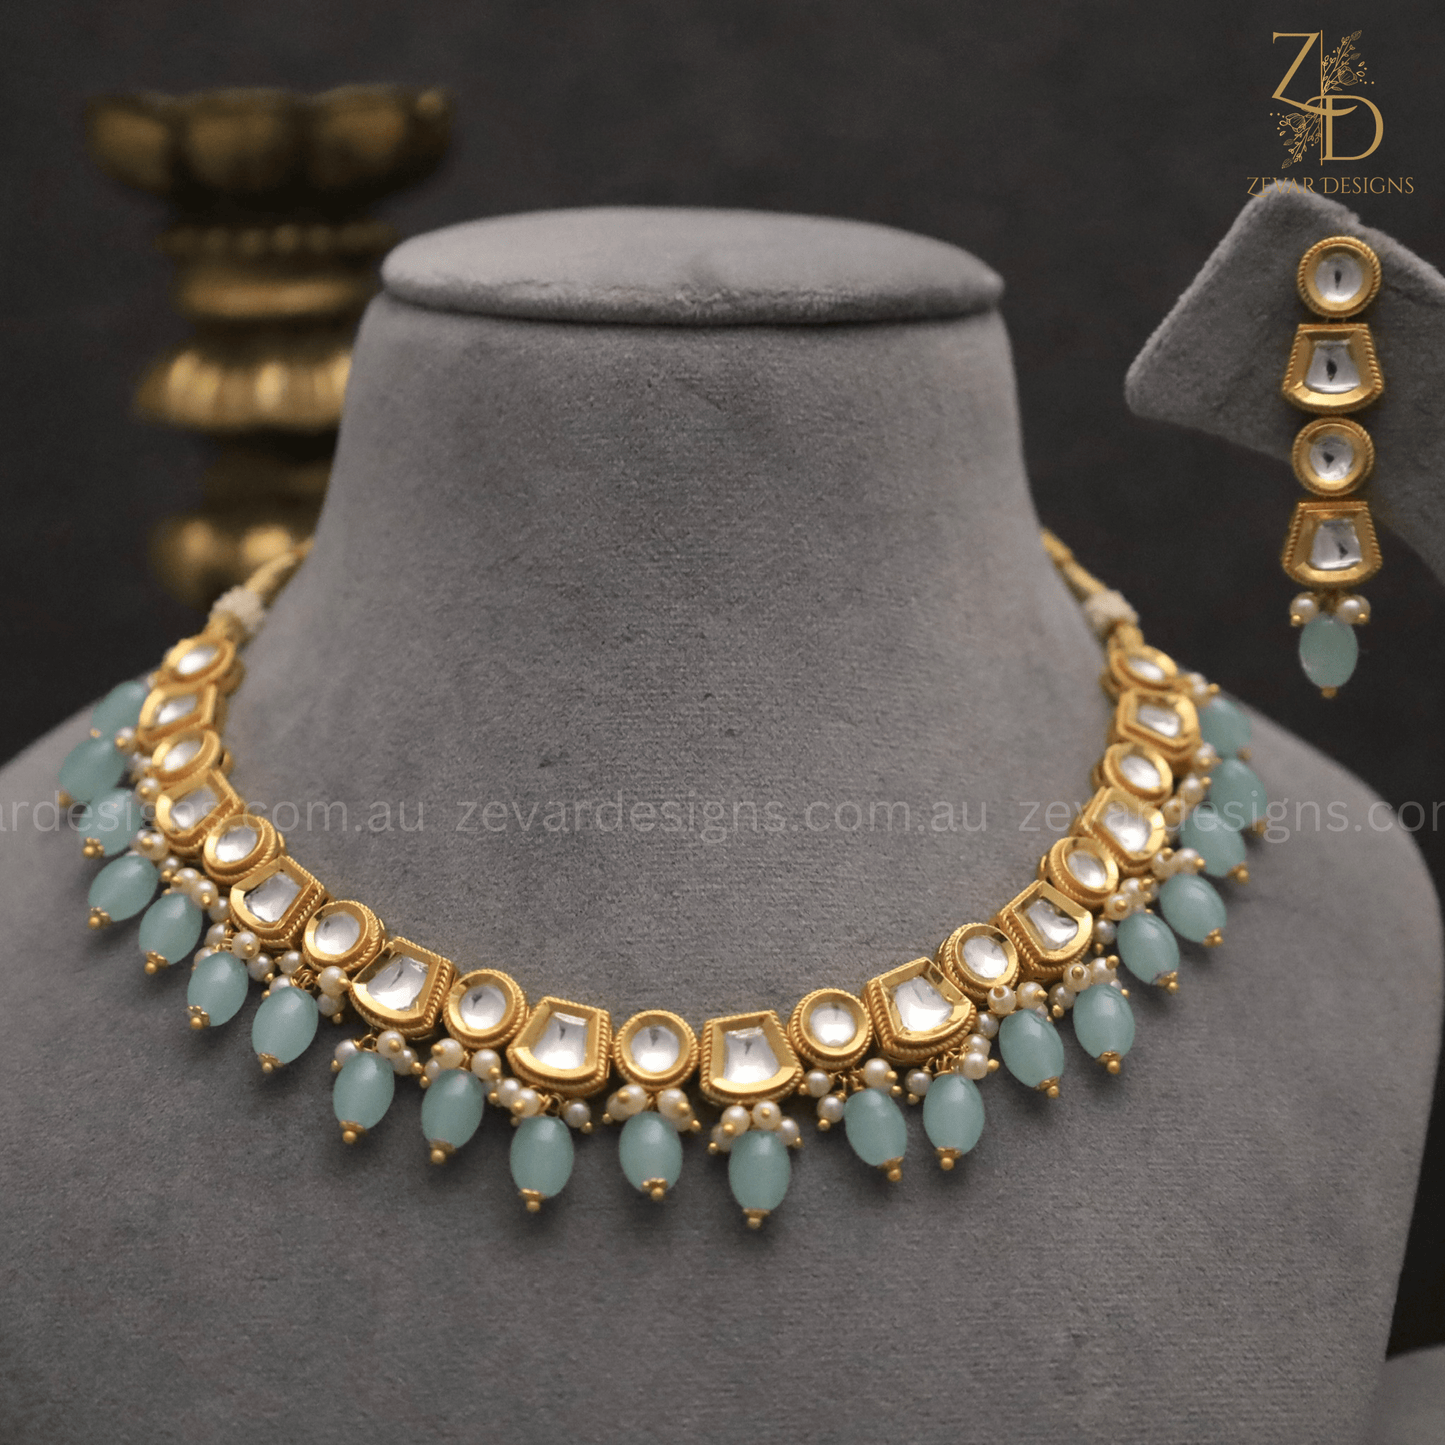 Zevar Designs Necklace Sets Gold Plated Lightweight Polki Necklace Set - Ocean Blue